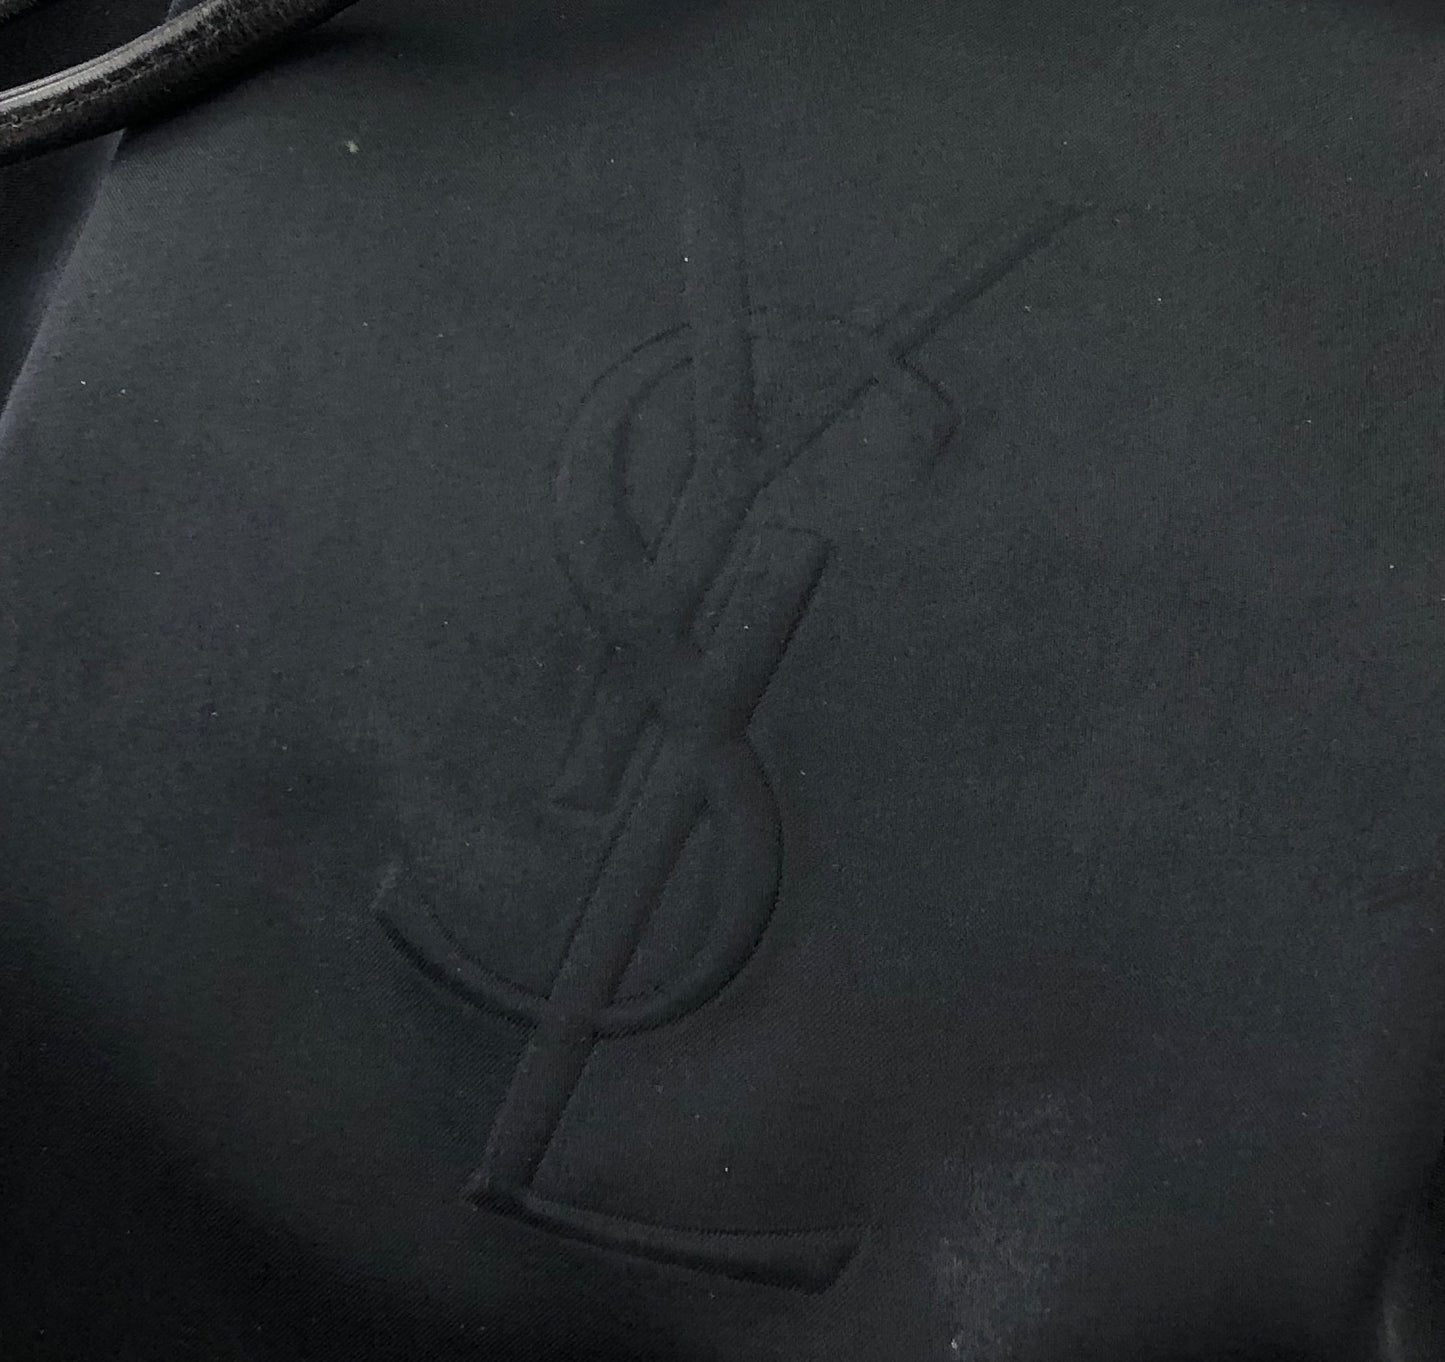 Yves Saint Laurent Logo Nylon Drawstring Backpack Navy Vintages76t25